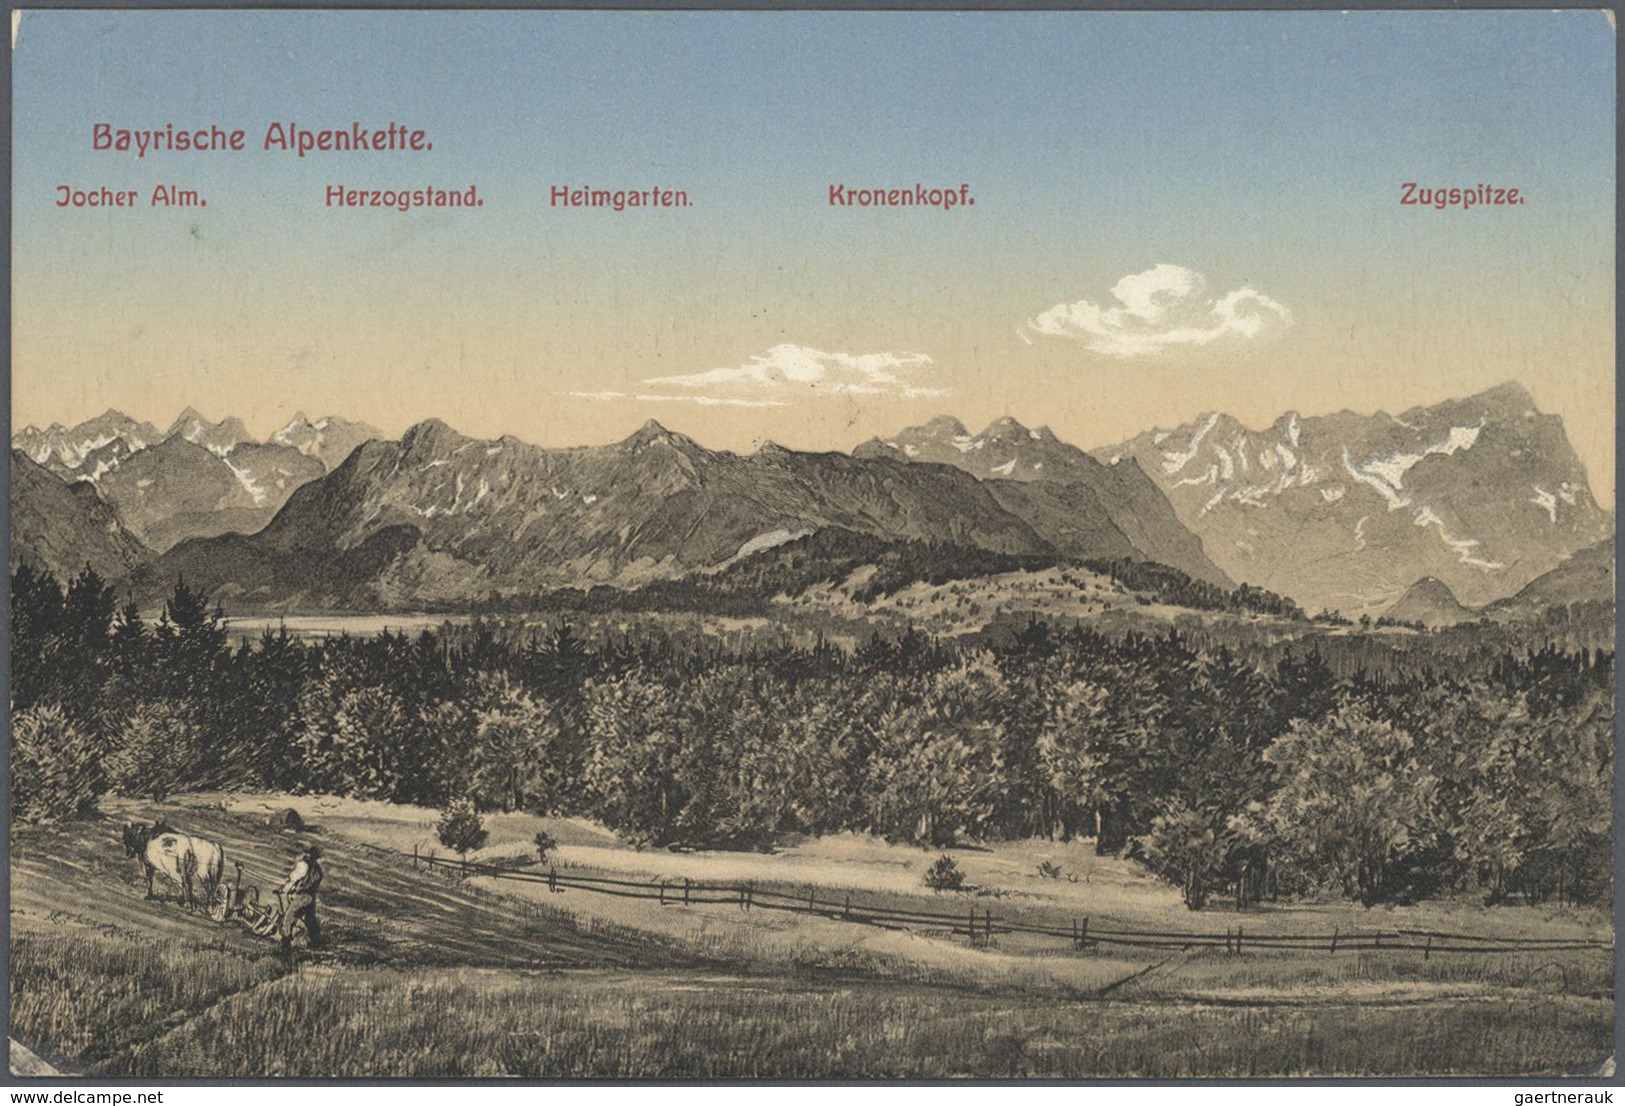 Ansichtskarten: Bayern: ISARTAL (alte PLZ 802), mit u.a. Baierbrunn, Schäftlarn, Icking, Grünwald, G